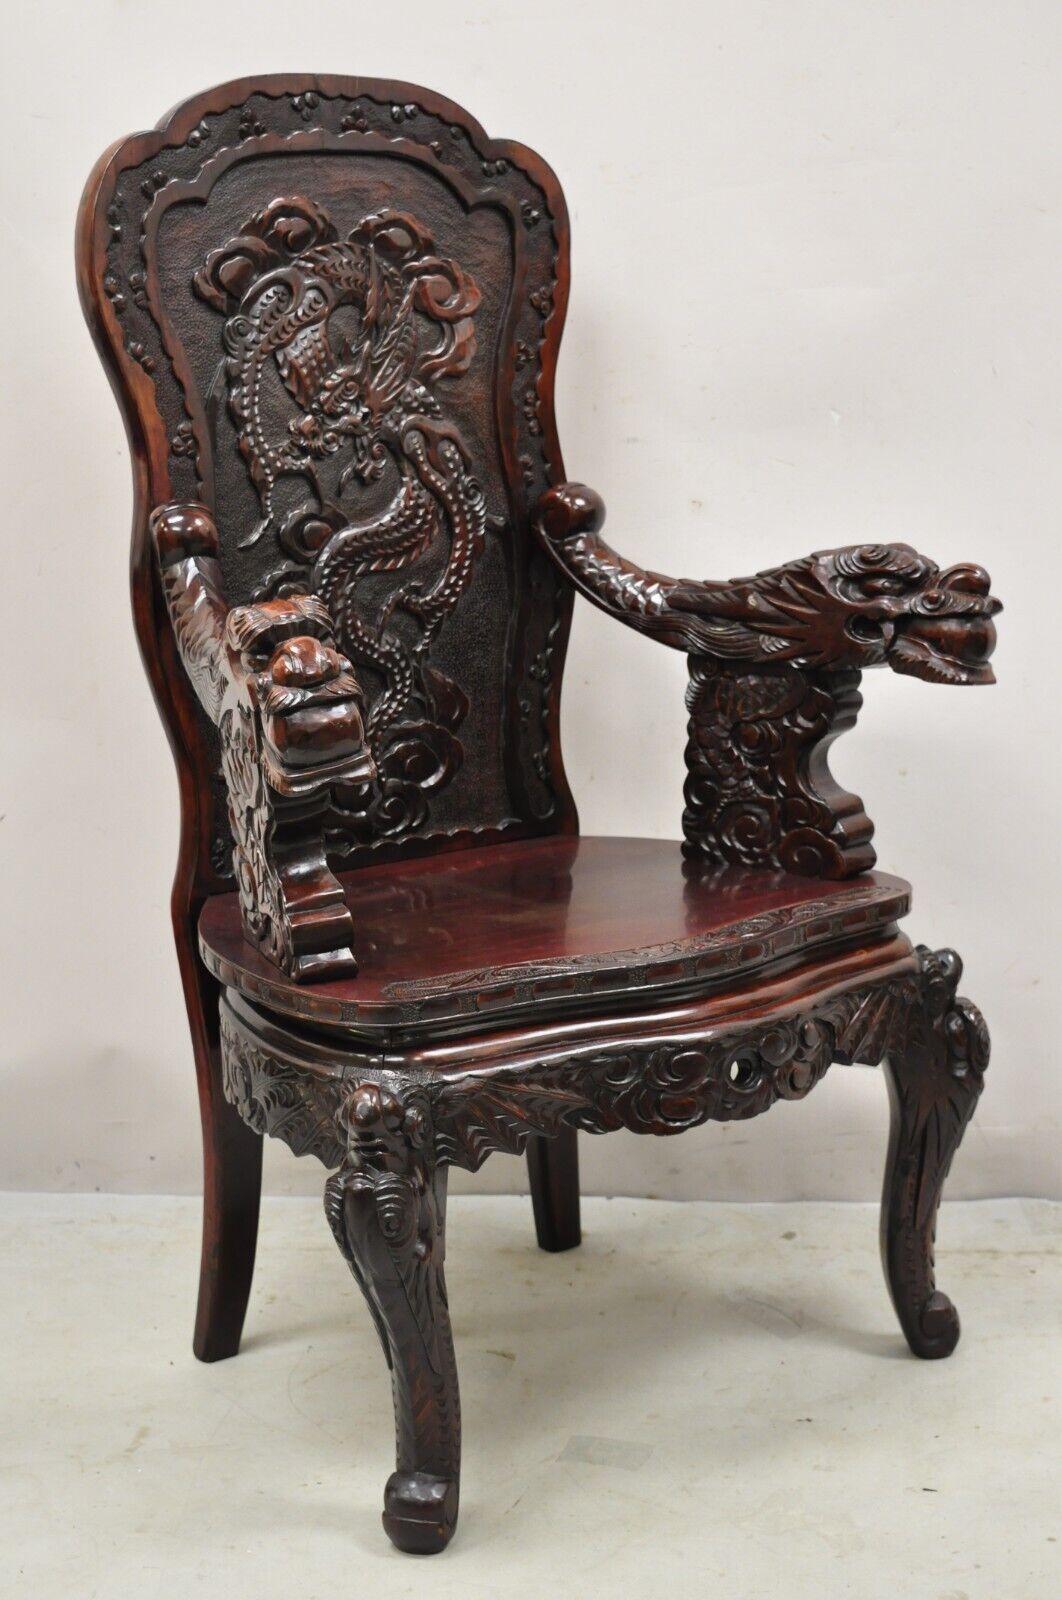 Fauteuil ancien en bois dur sculpté d'exportation japonaise en forme de trône de chien foo. Cet article présente des accoudoirs sculptés en forme de chien de Foo, une construction en bois massif, un beau grain de bois, des détails joliment sculptés,